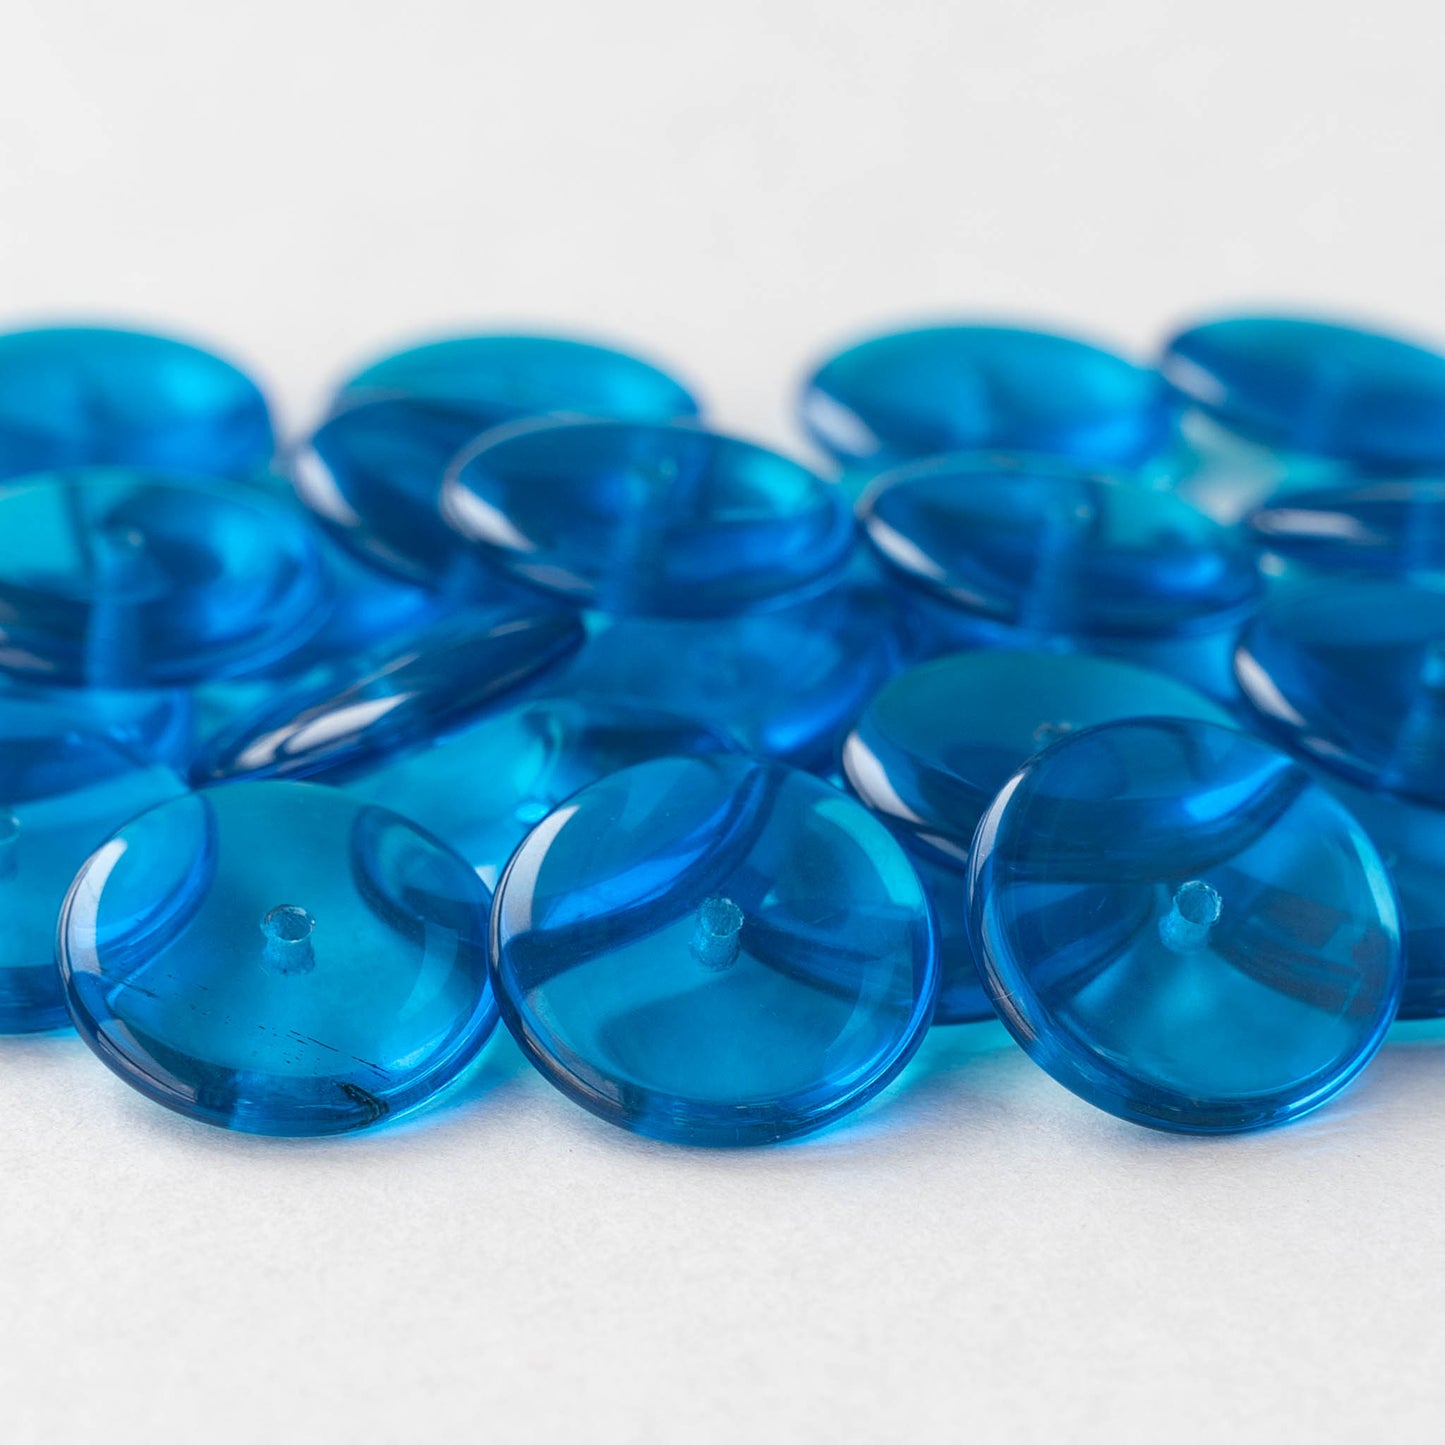 16mm Rondelle Beads - Capri Blue - 10 Beads